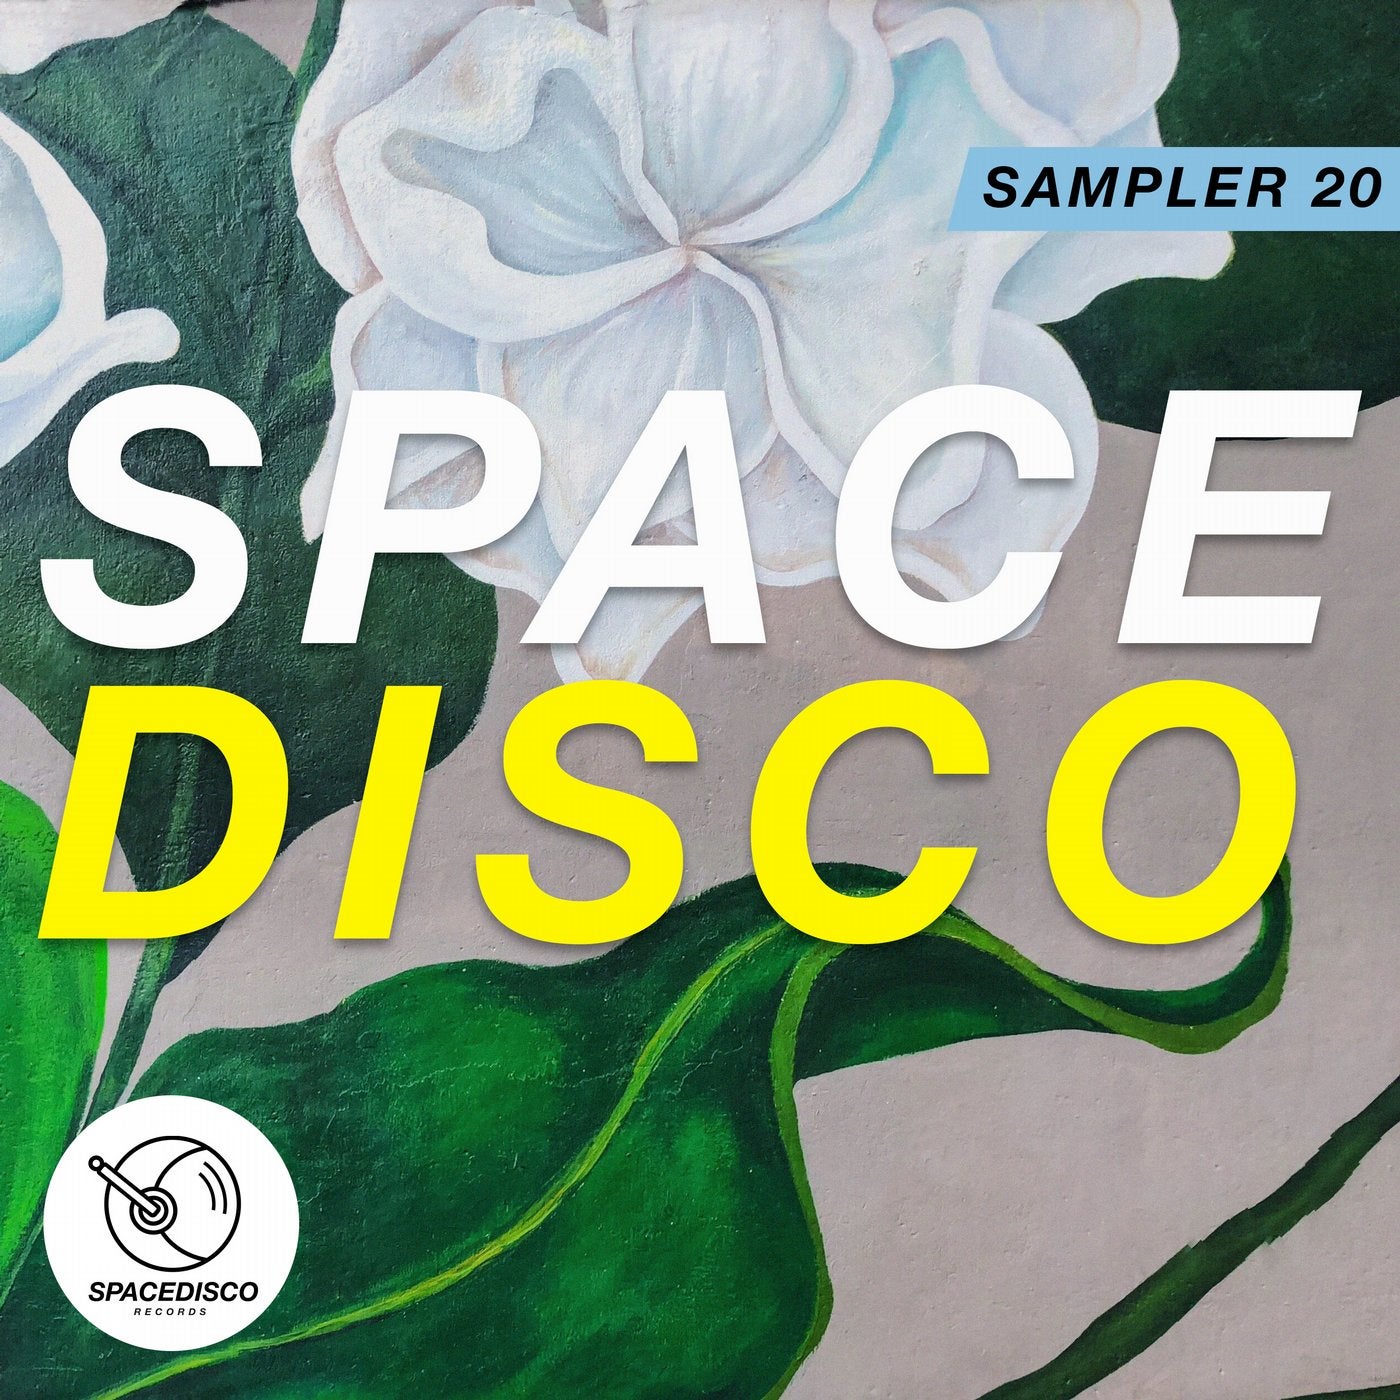 Spacedisco Sampler 20